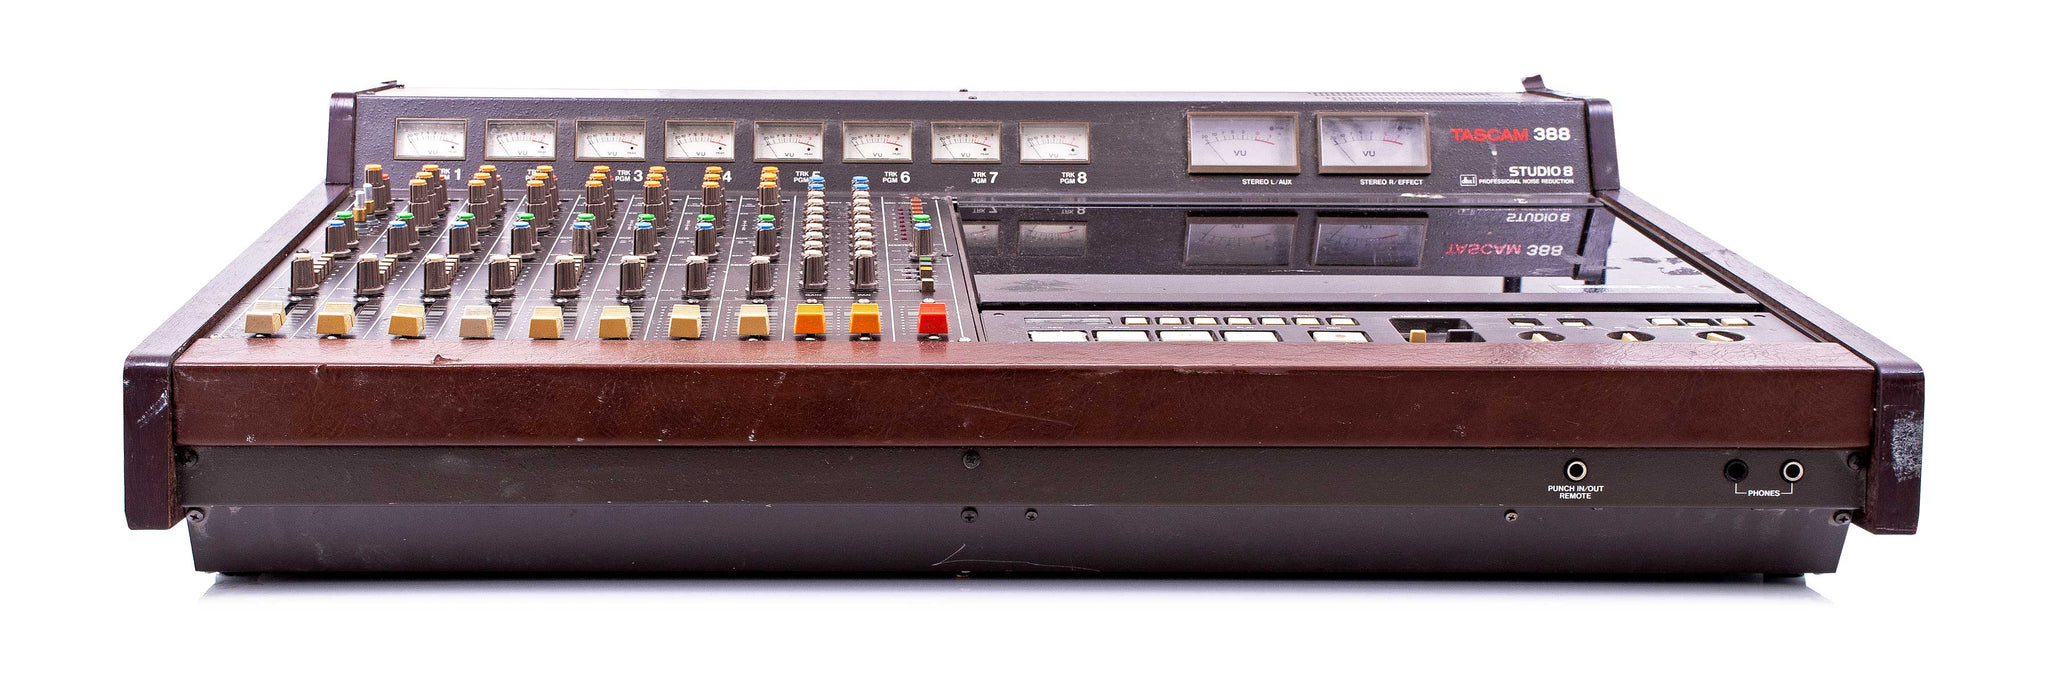 Tascam 388 8 Channel Mixer Console Vintage Rare – Retro Gear Shop